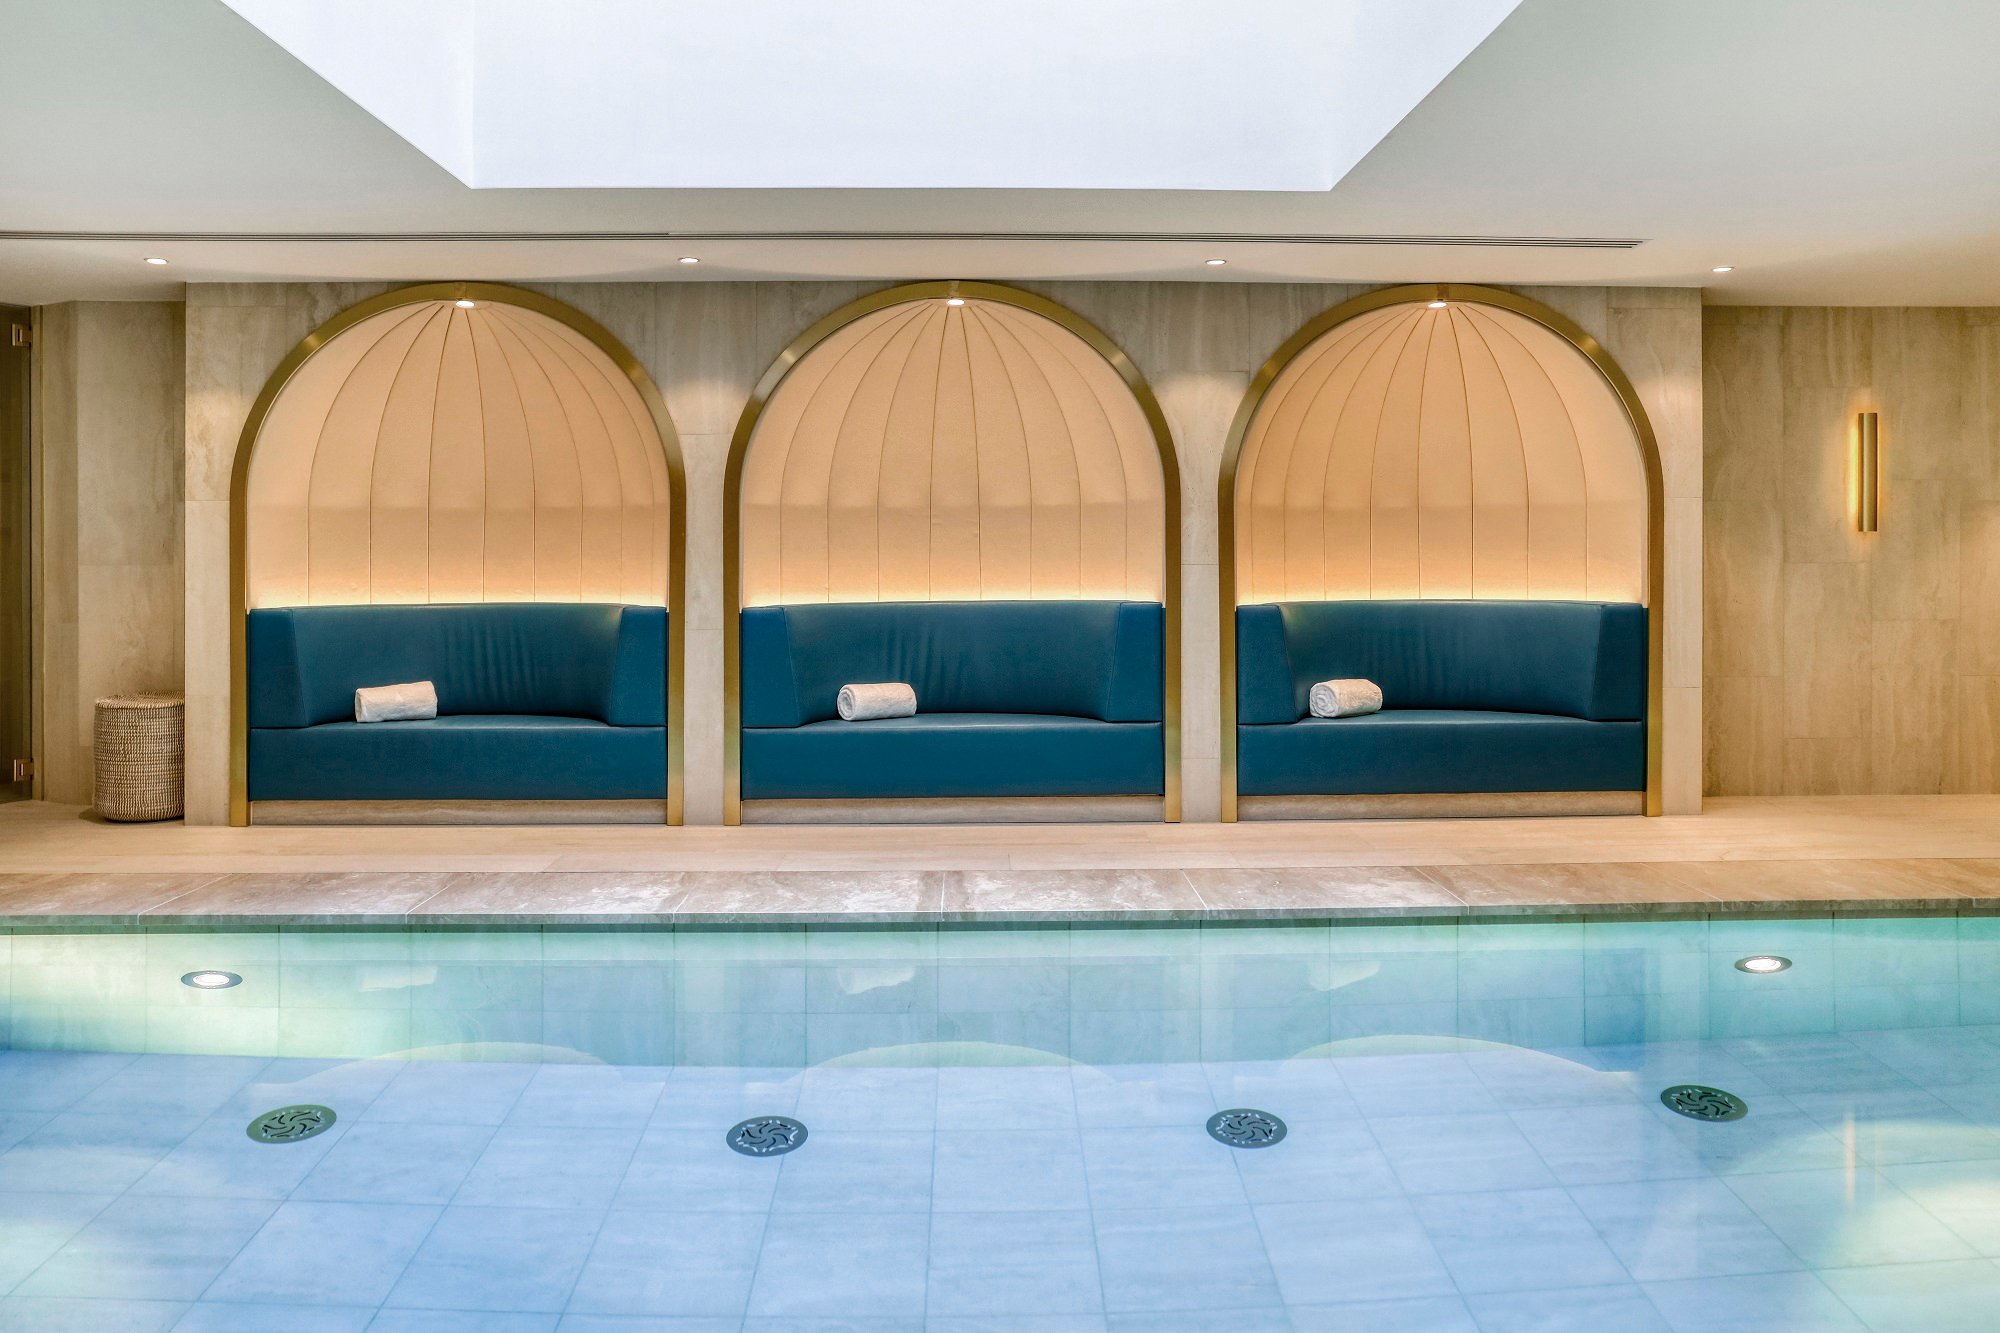 Maison Albar Hotels Le Vendome - Spa Vendome by Carita - piscine intérieure